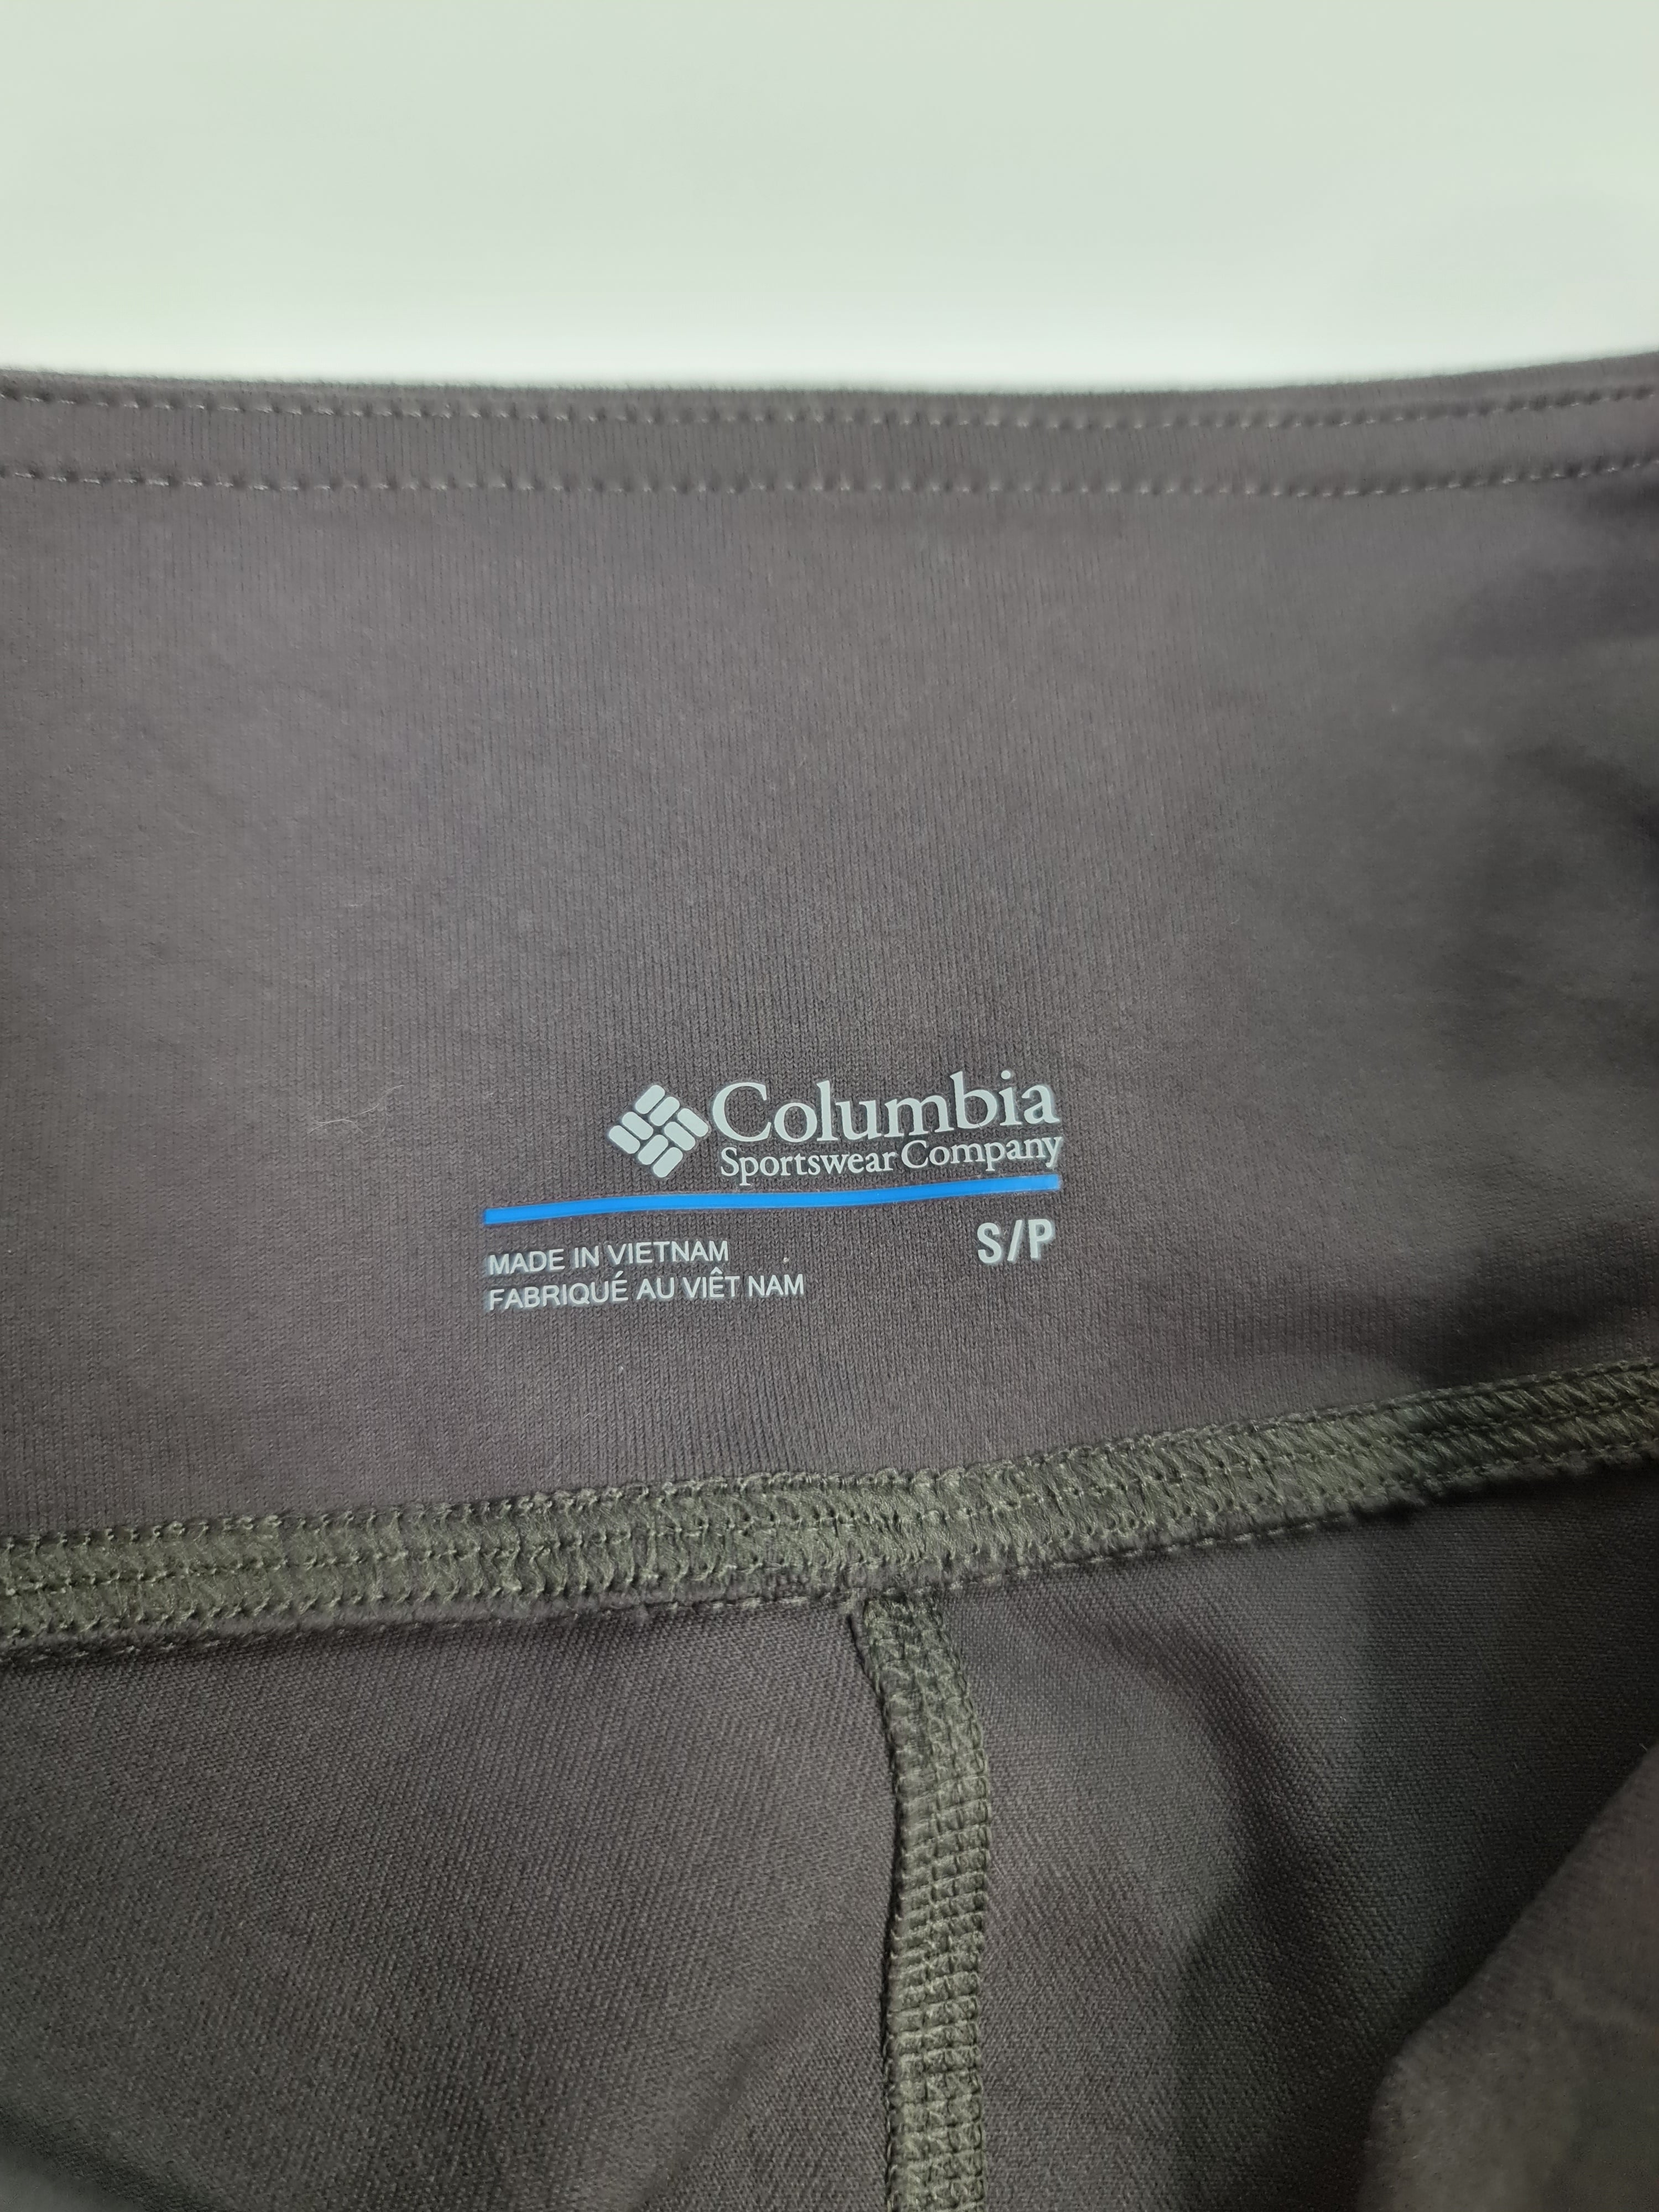 Licra marca Columbia - (Talla: S/P)